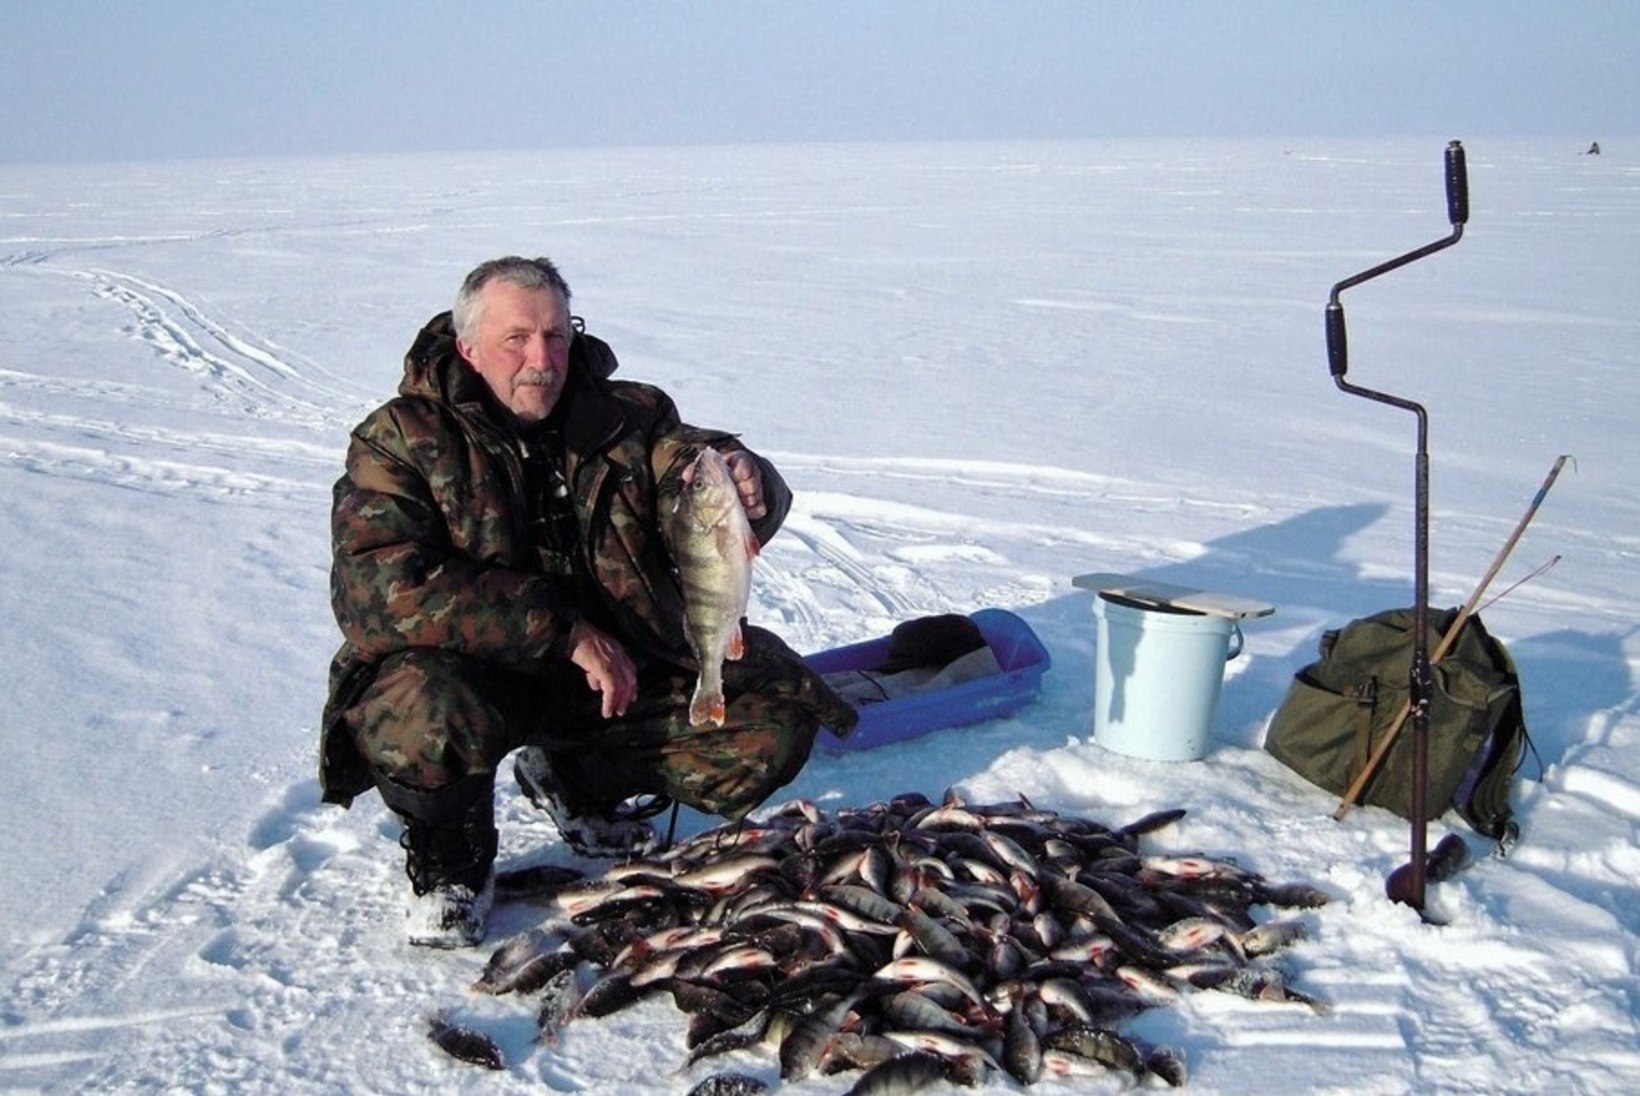 Veterankalamees Katenevi päevikud: 2000. aastal suunasid Emajõe vähesed latikad kätte võtma spinningu
